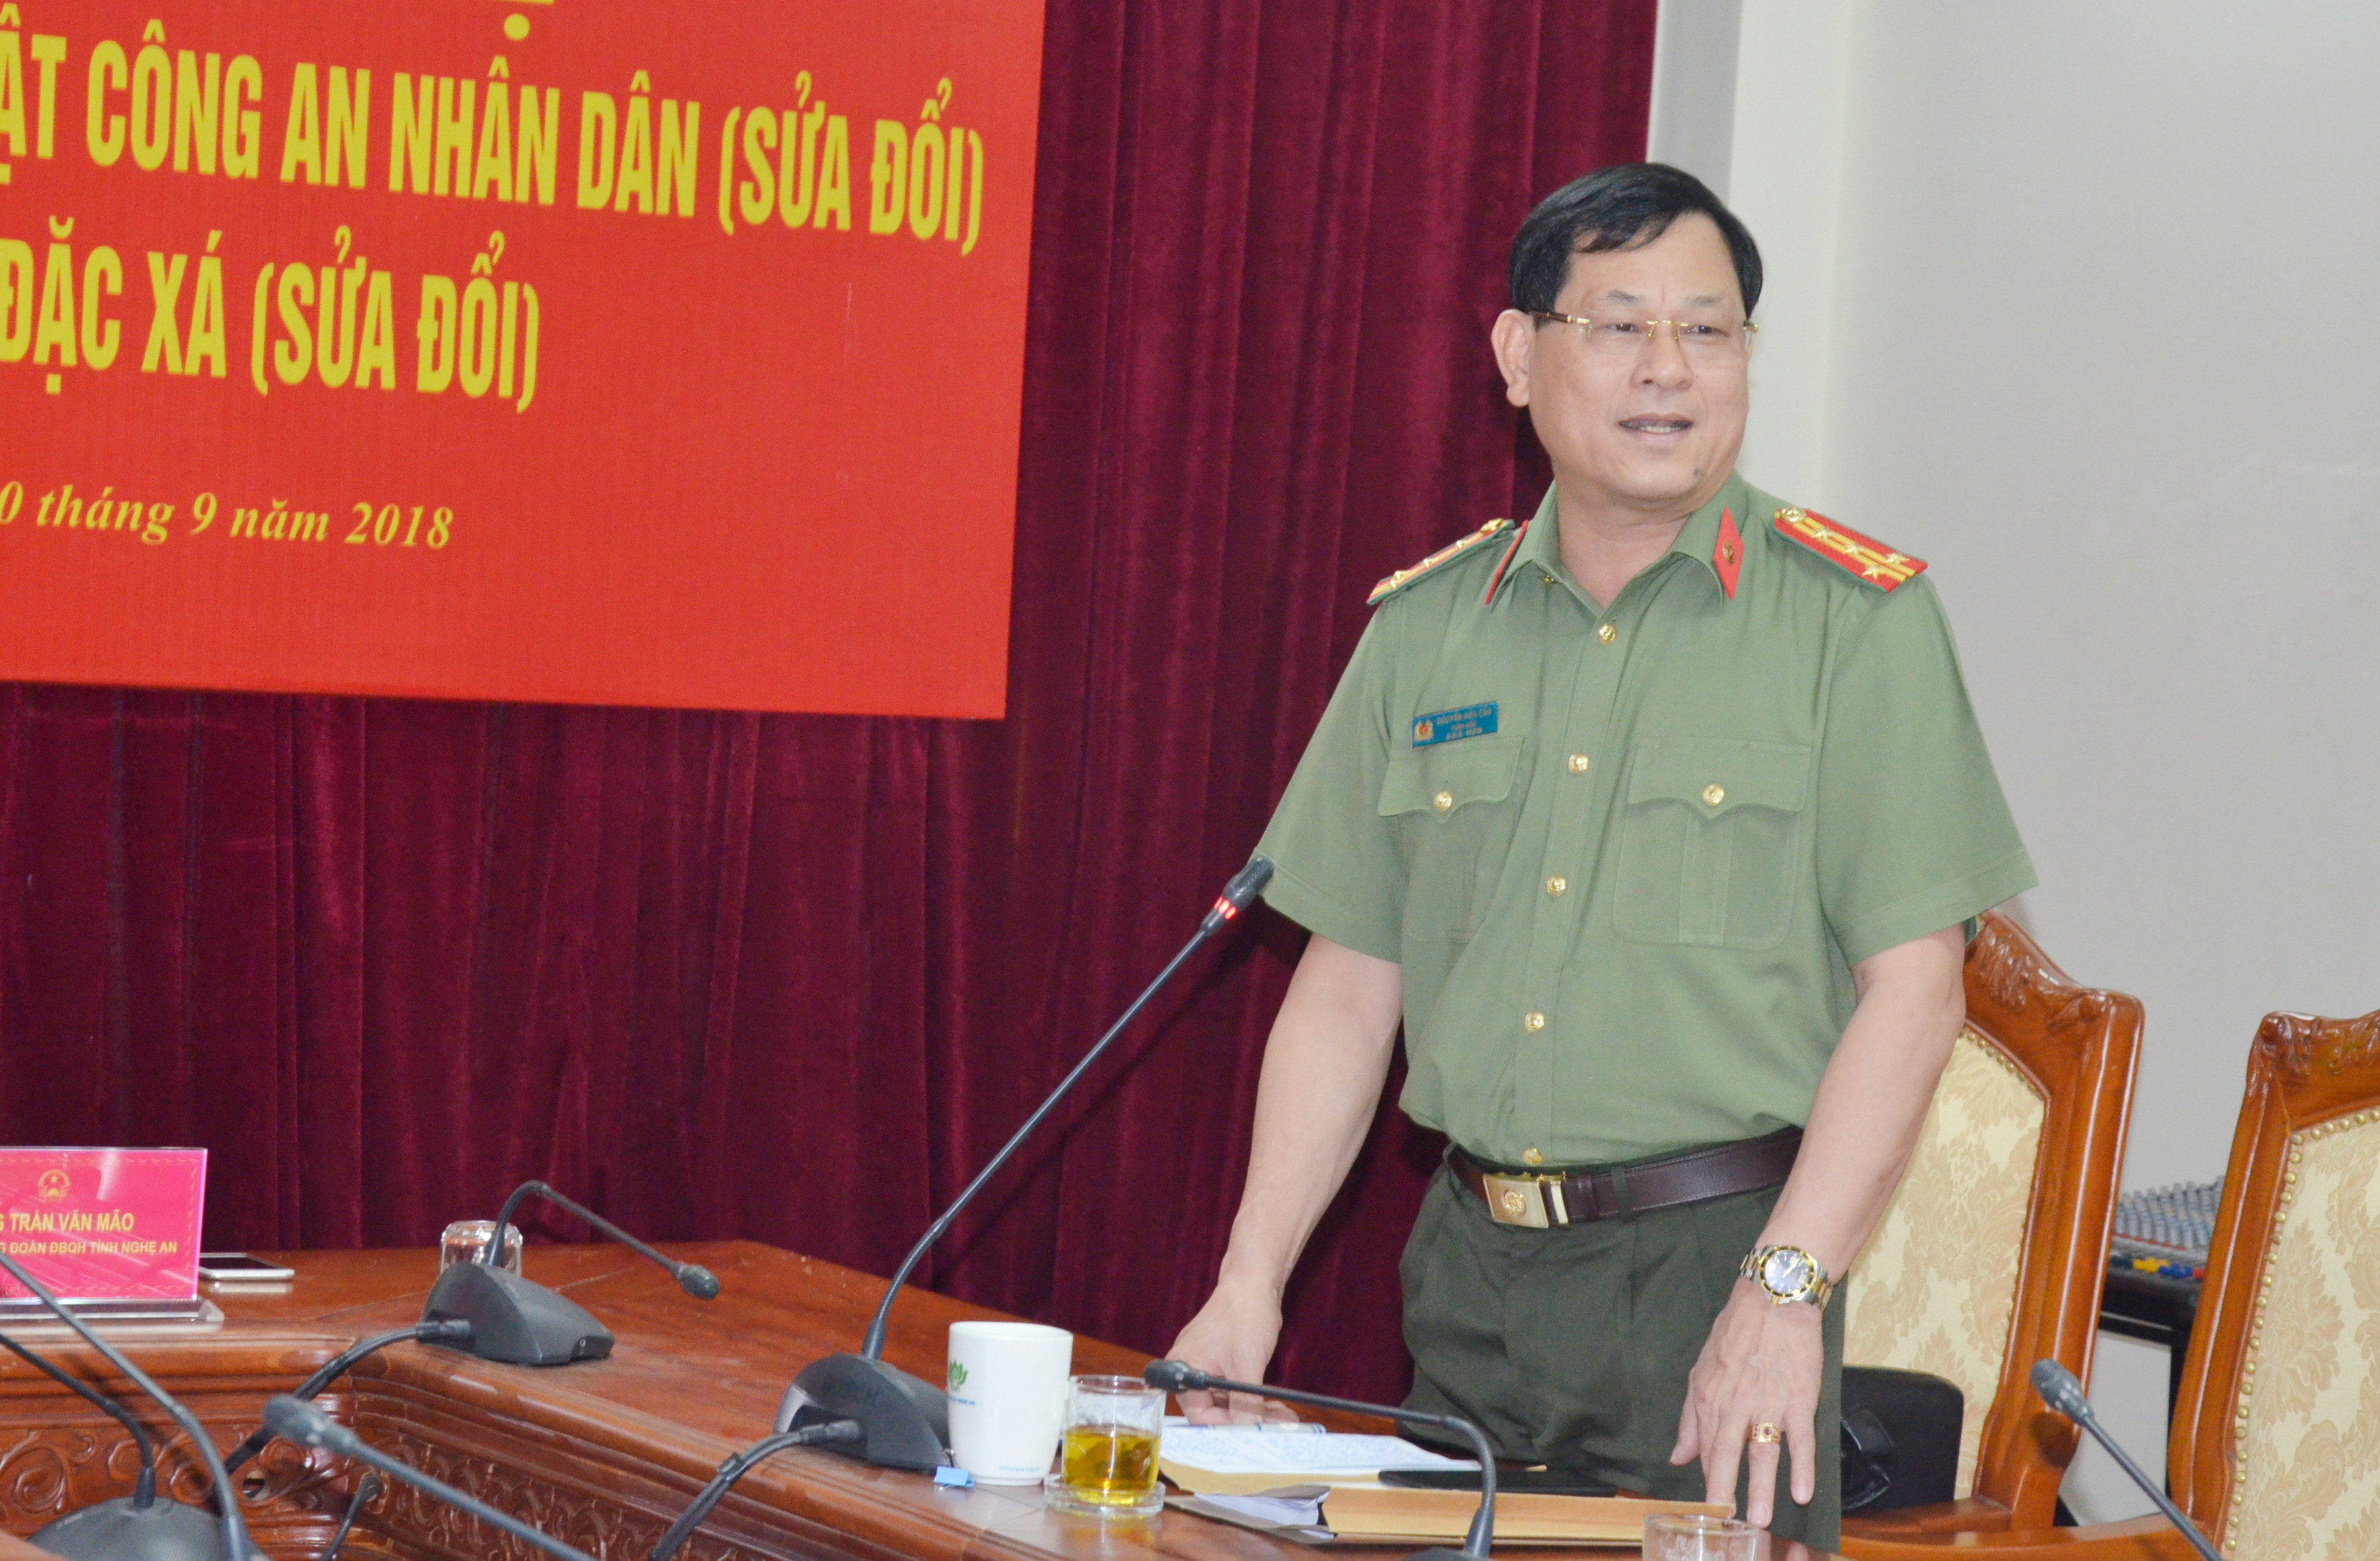 Đại tá Nguyễn Hữu Cầu - Giám đốc Công an tỉnh làm rõ những vấn đề các đại biểu quan quan tâm. Ảnh Thanh Lê